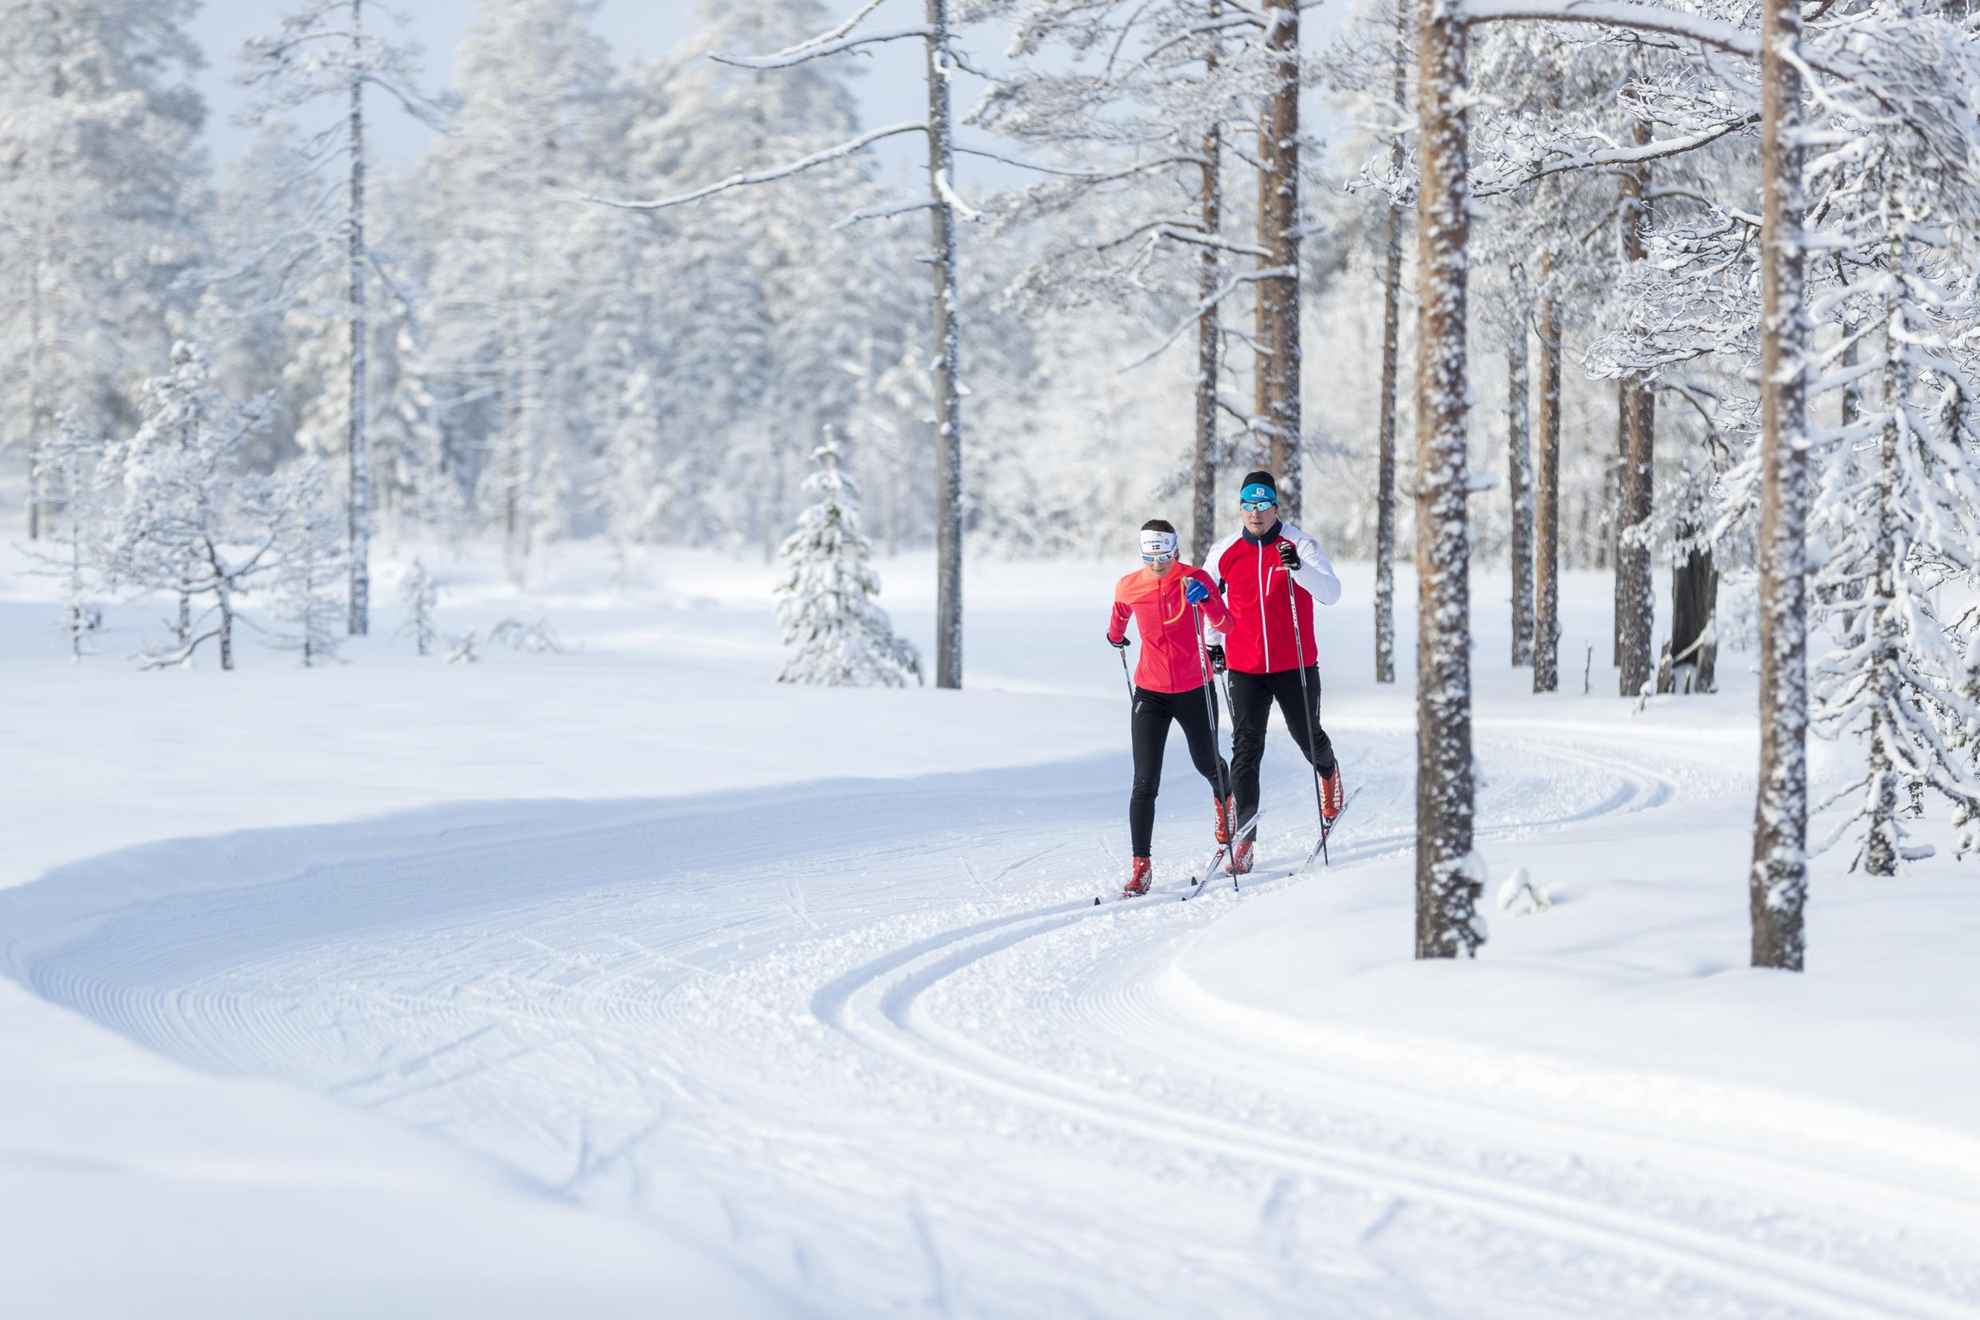 Deux personnes en veste rouge font du ski de fond dans une forêt enneigée.